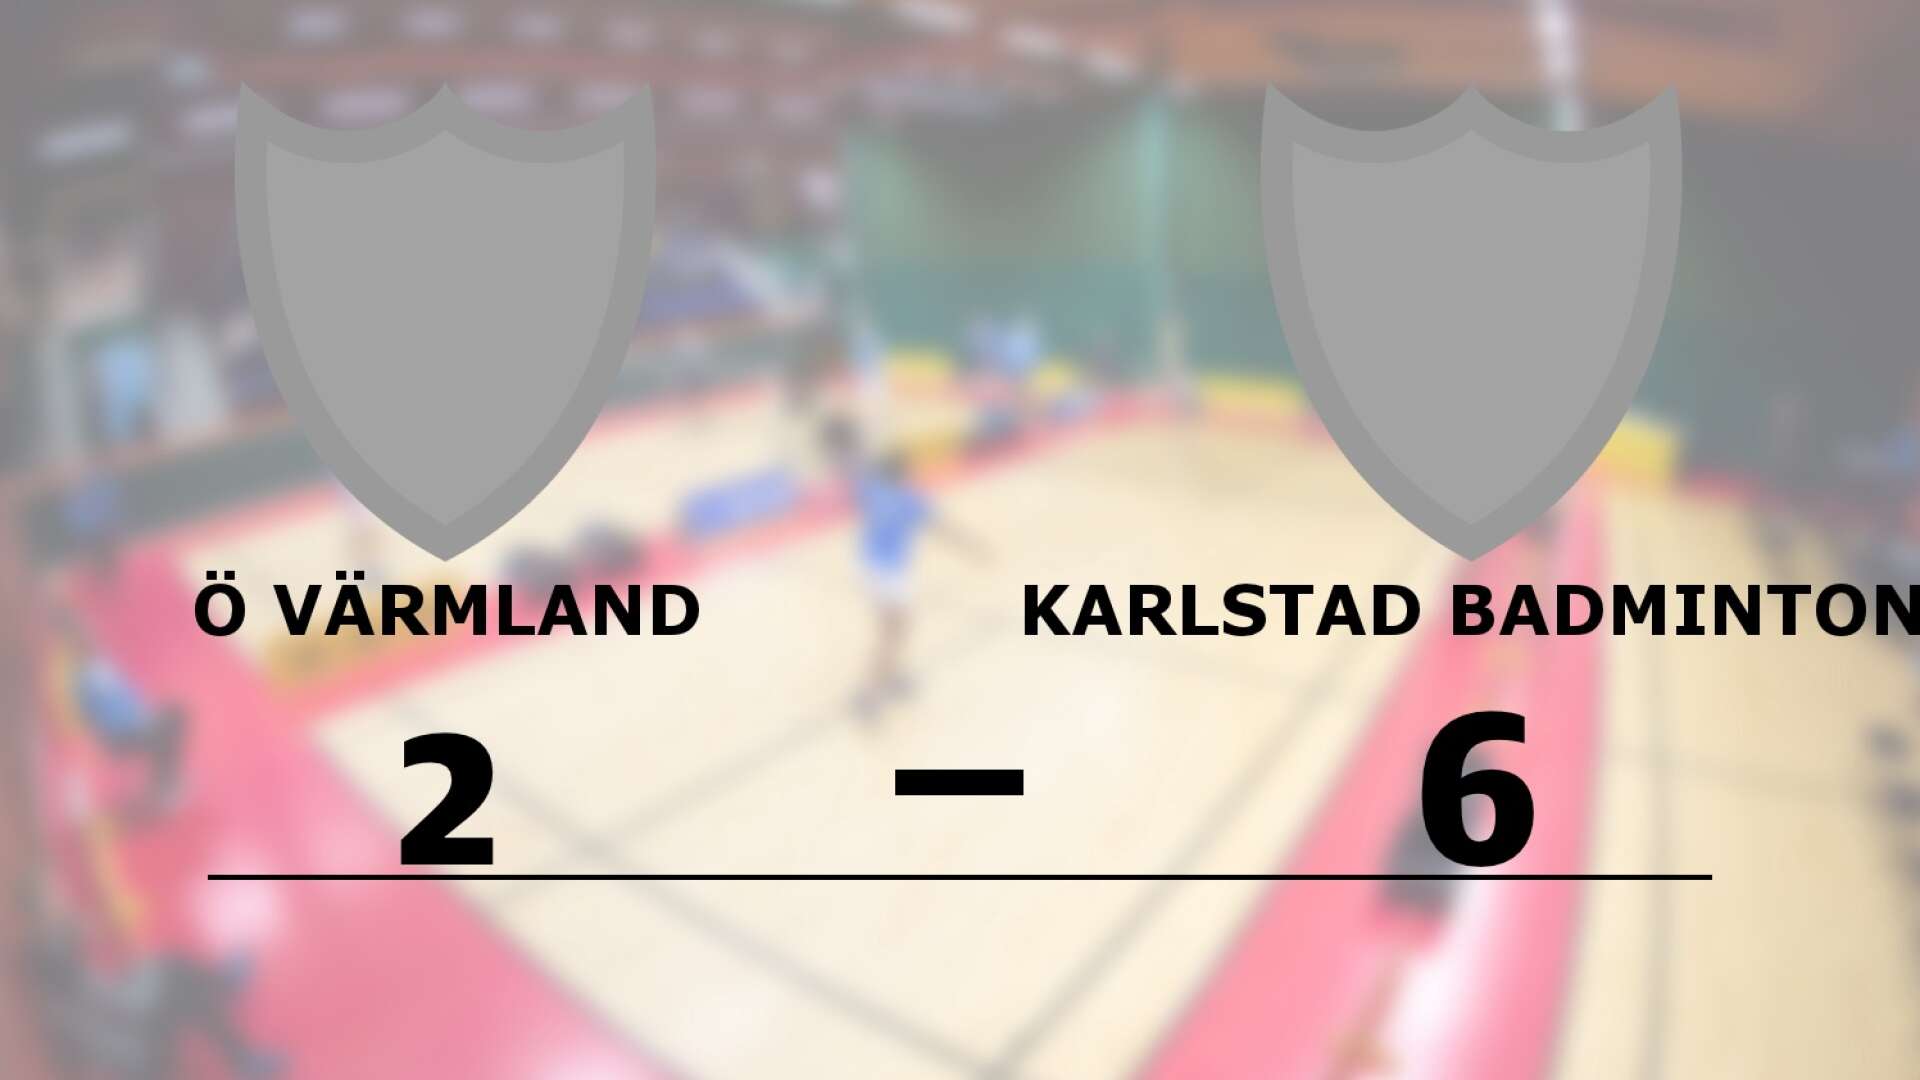 Ö Värmland förlorade mot Karlstad Badminton